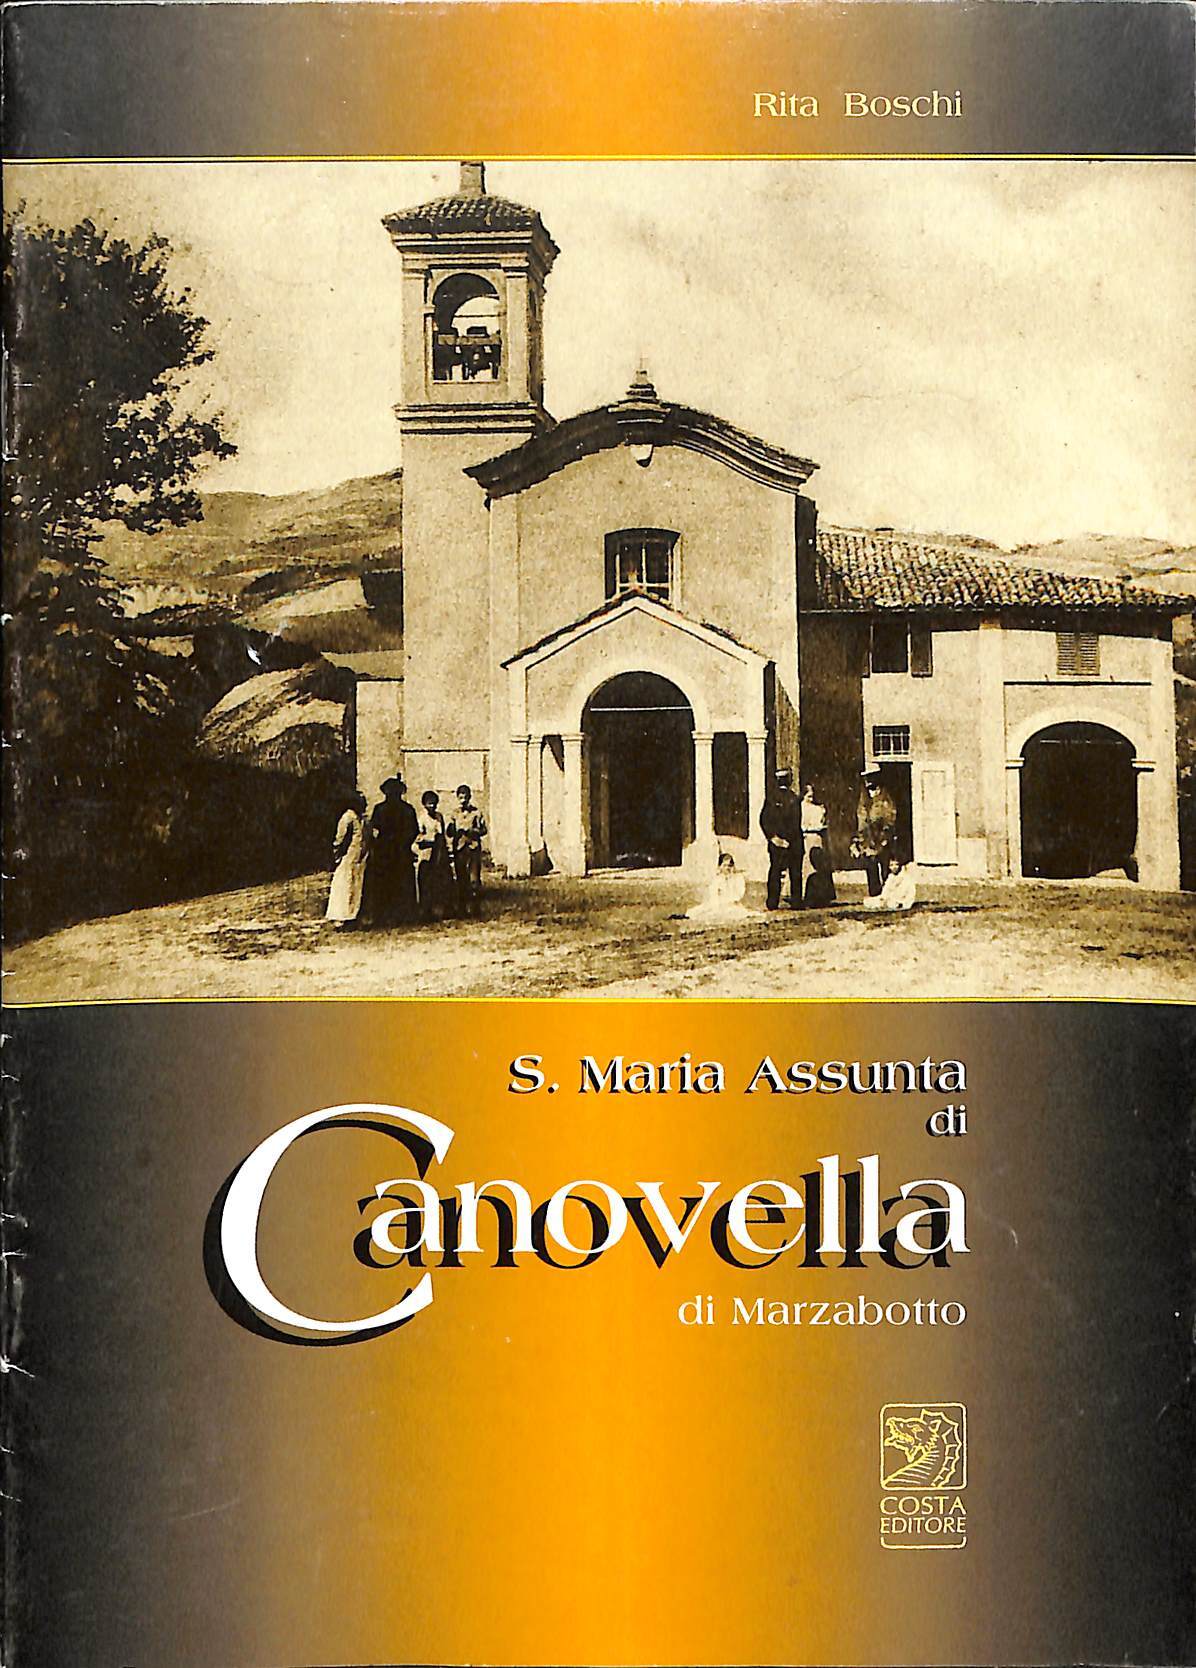 S. Maria Assunta di Canovella di Marzabotto